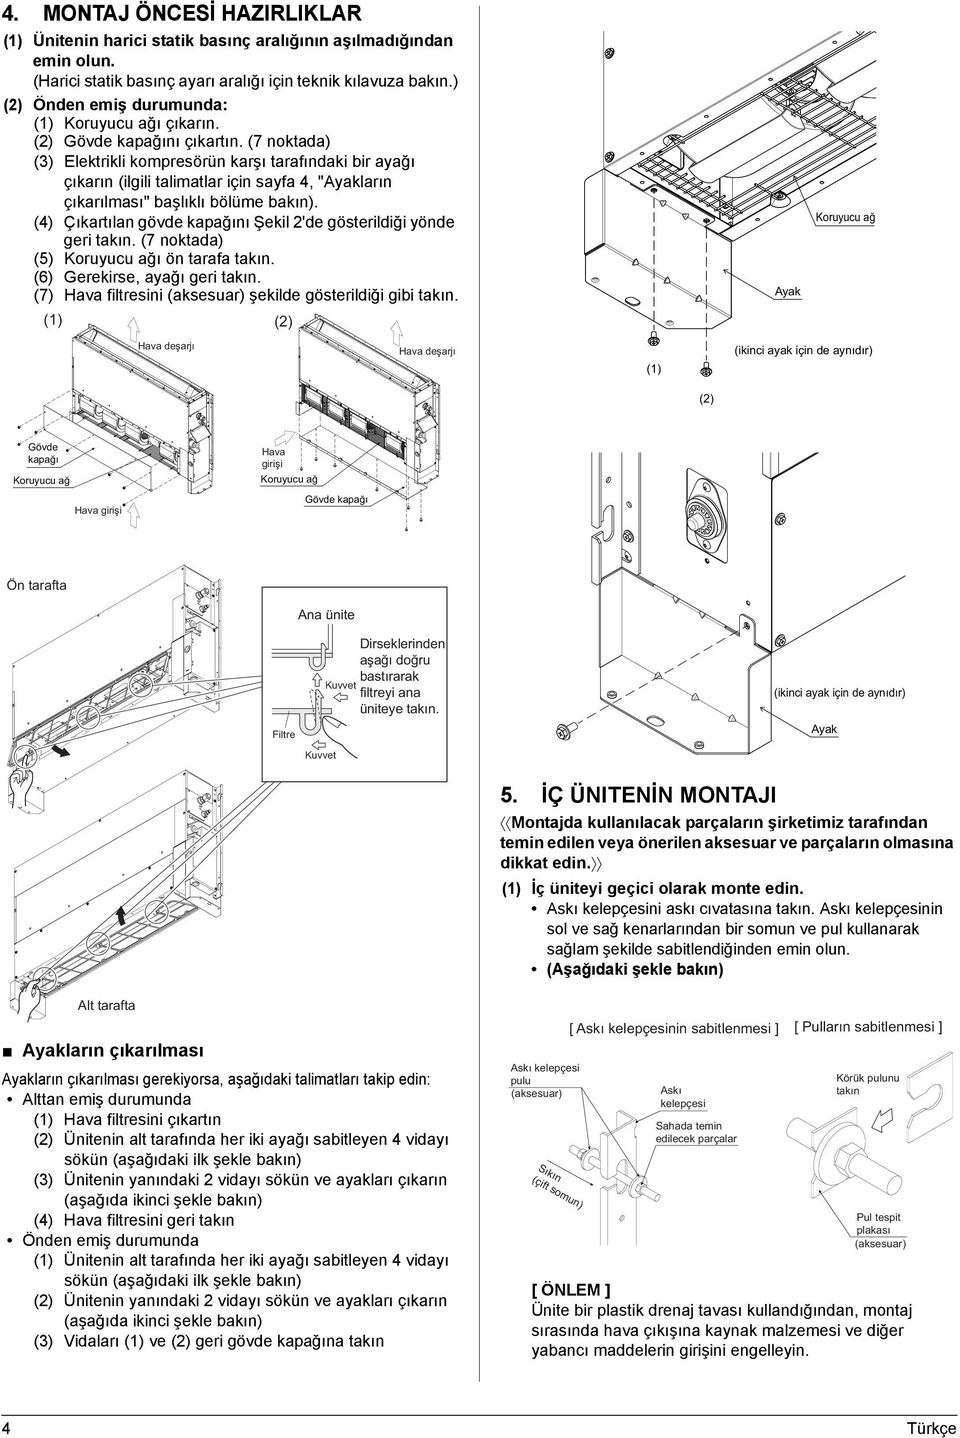 (7 noktada) (3) Elektrikli kompresörün karşı tarafındaki bir ayağı çıkarın (ilgili talimatlar için sayfa 4, "Ayakların çıkarılması" başlıklı bölüme bakın).